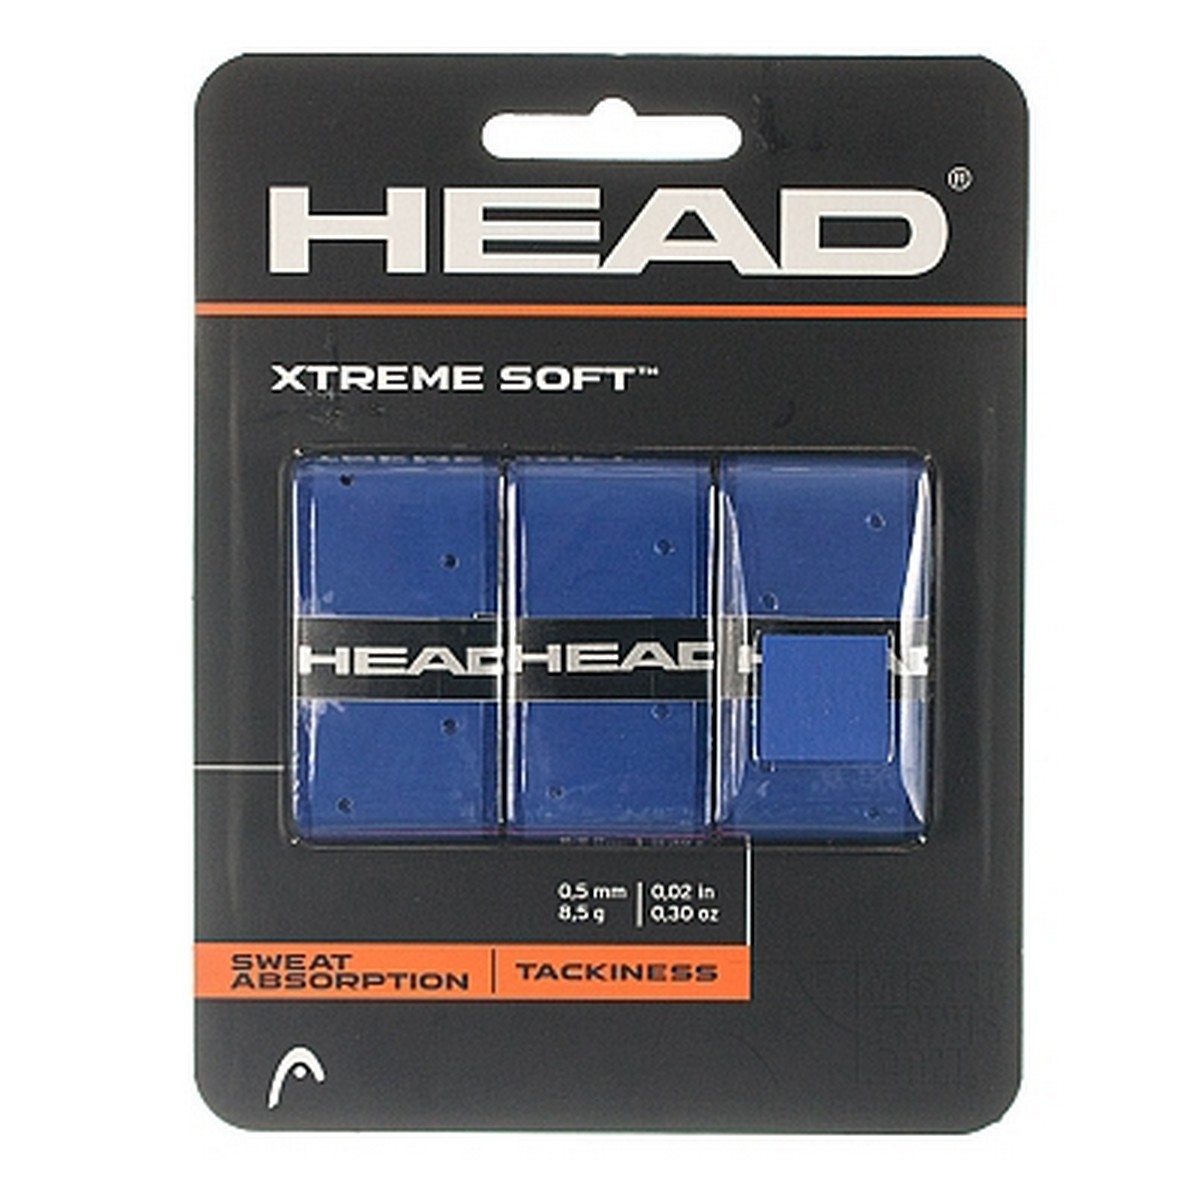 Head Xtremesoft Grip Overwrap 1/4 